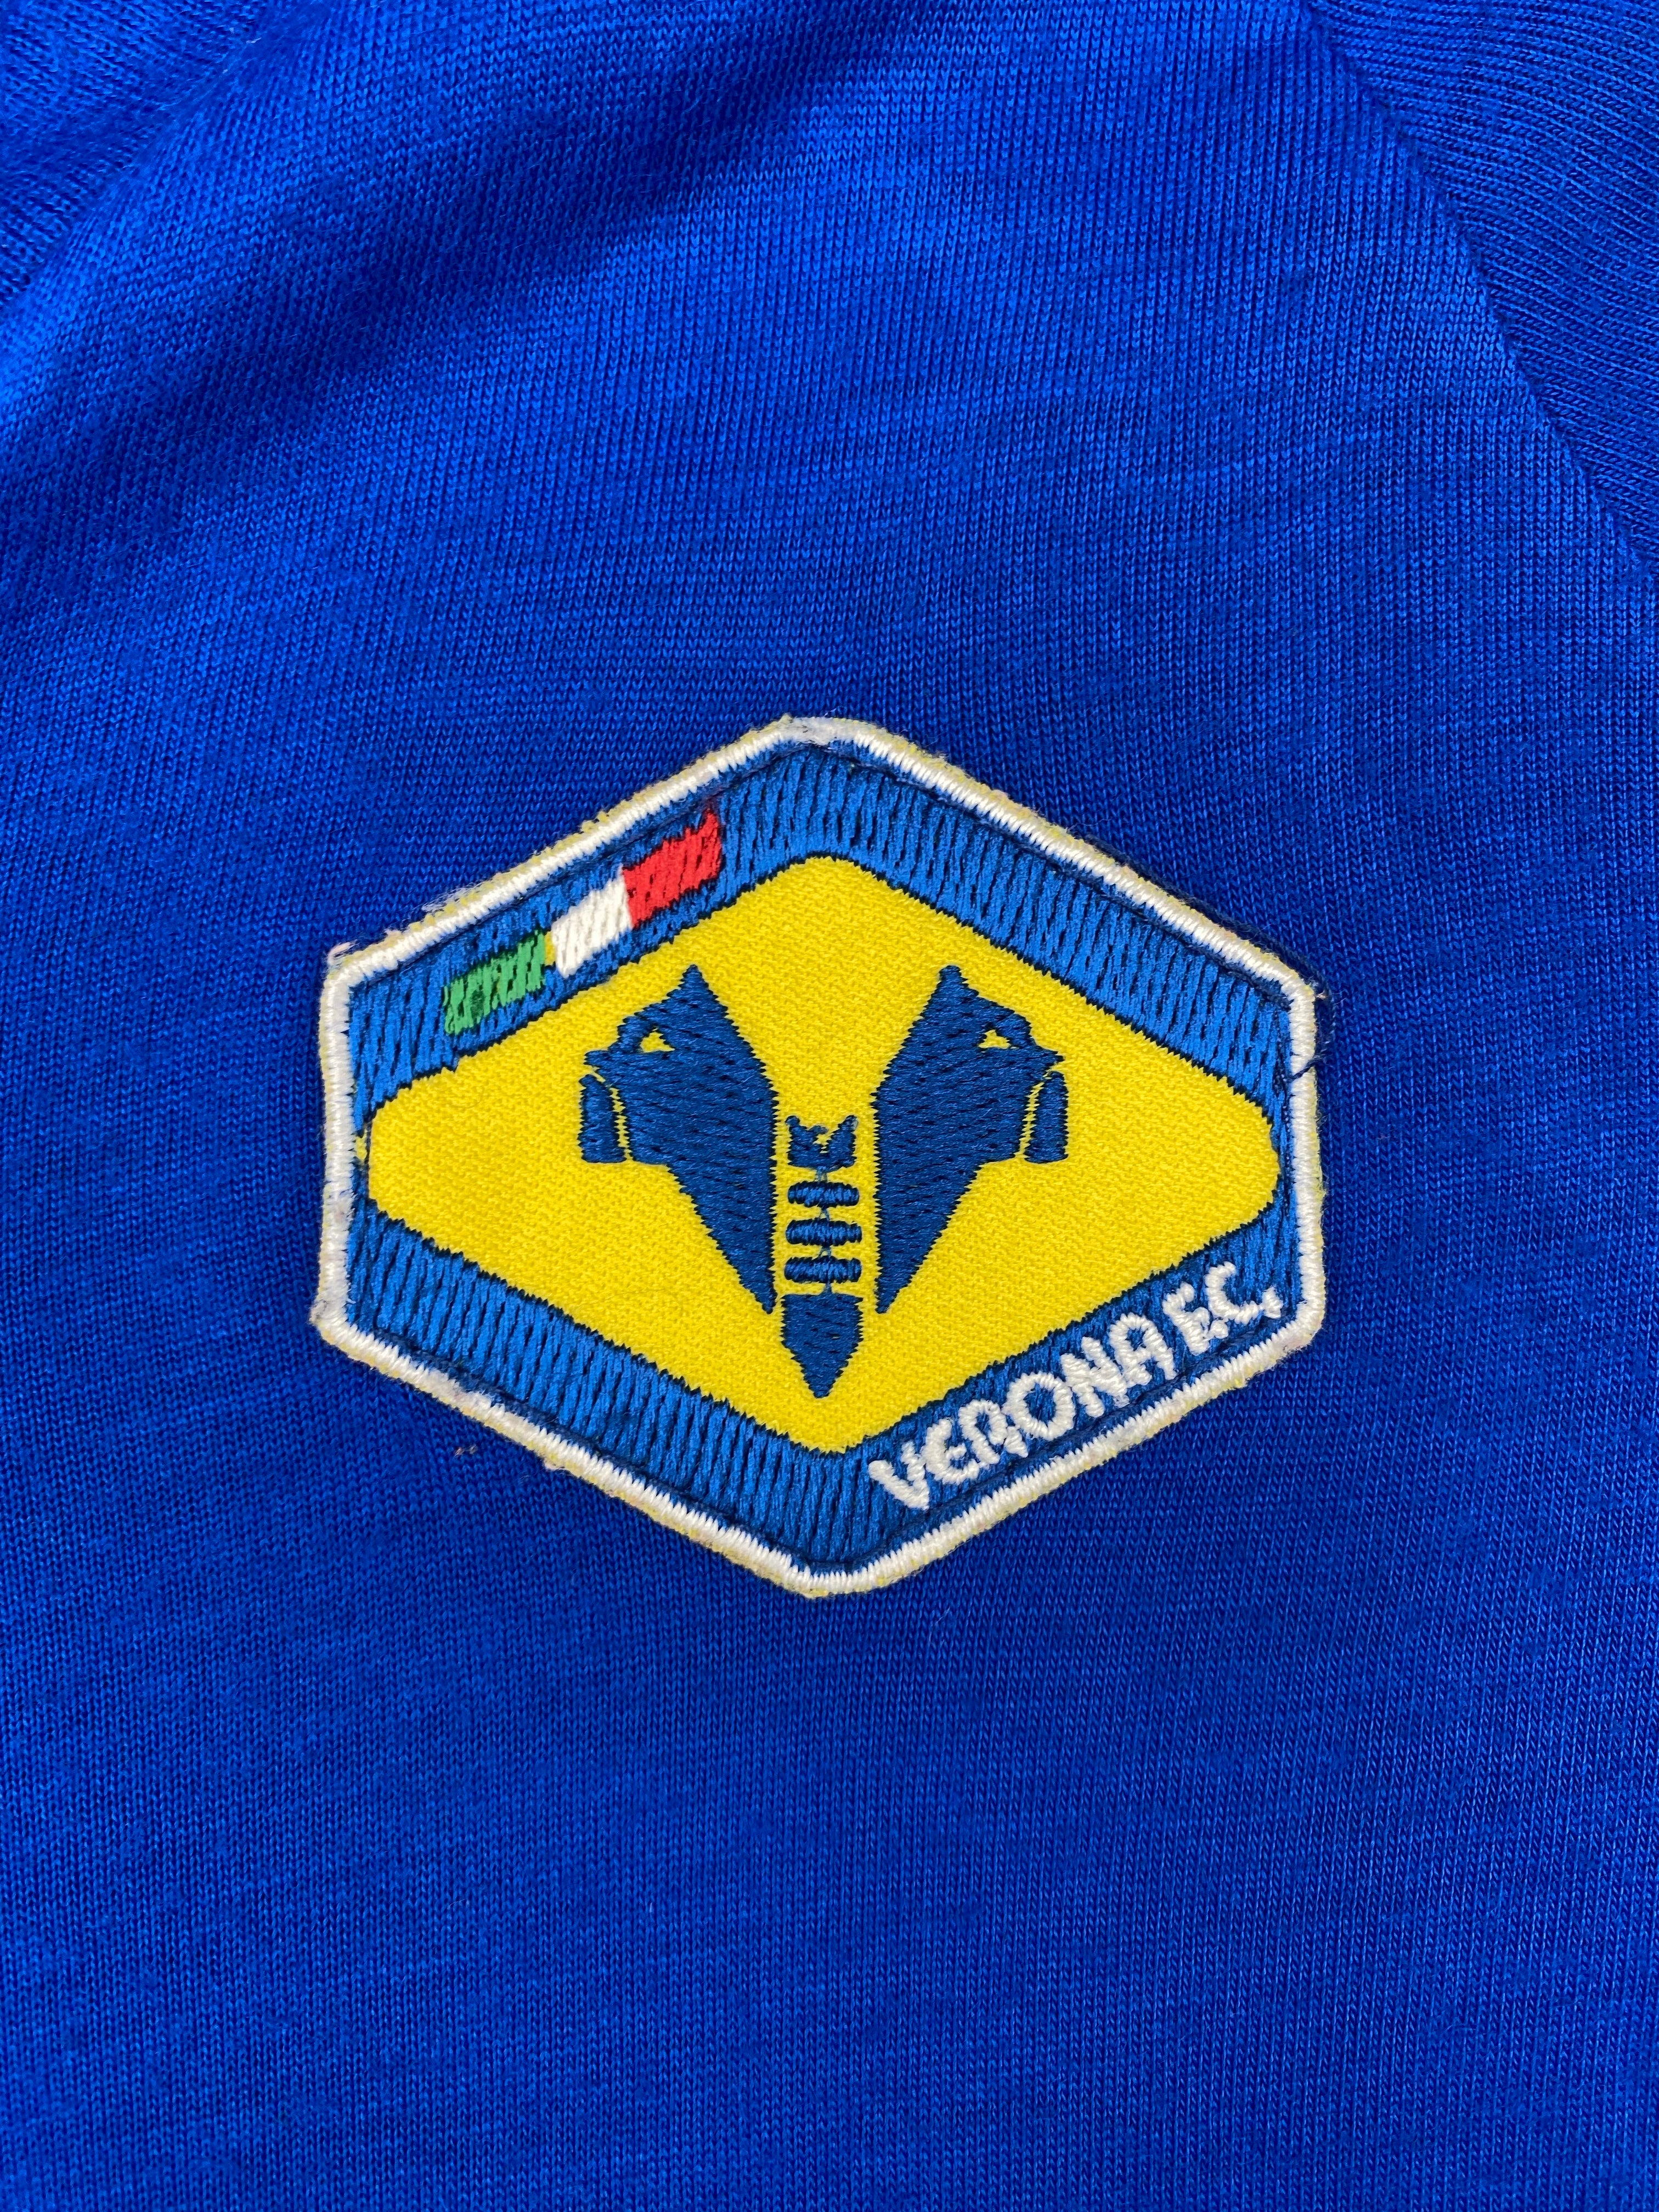 1991/92 Hellas Verona Training Shirt (M) 8/10